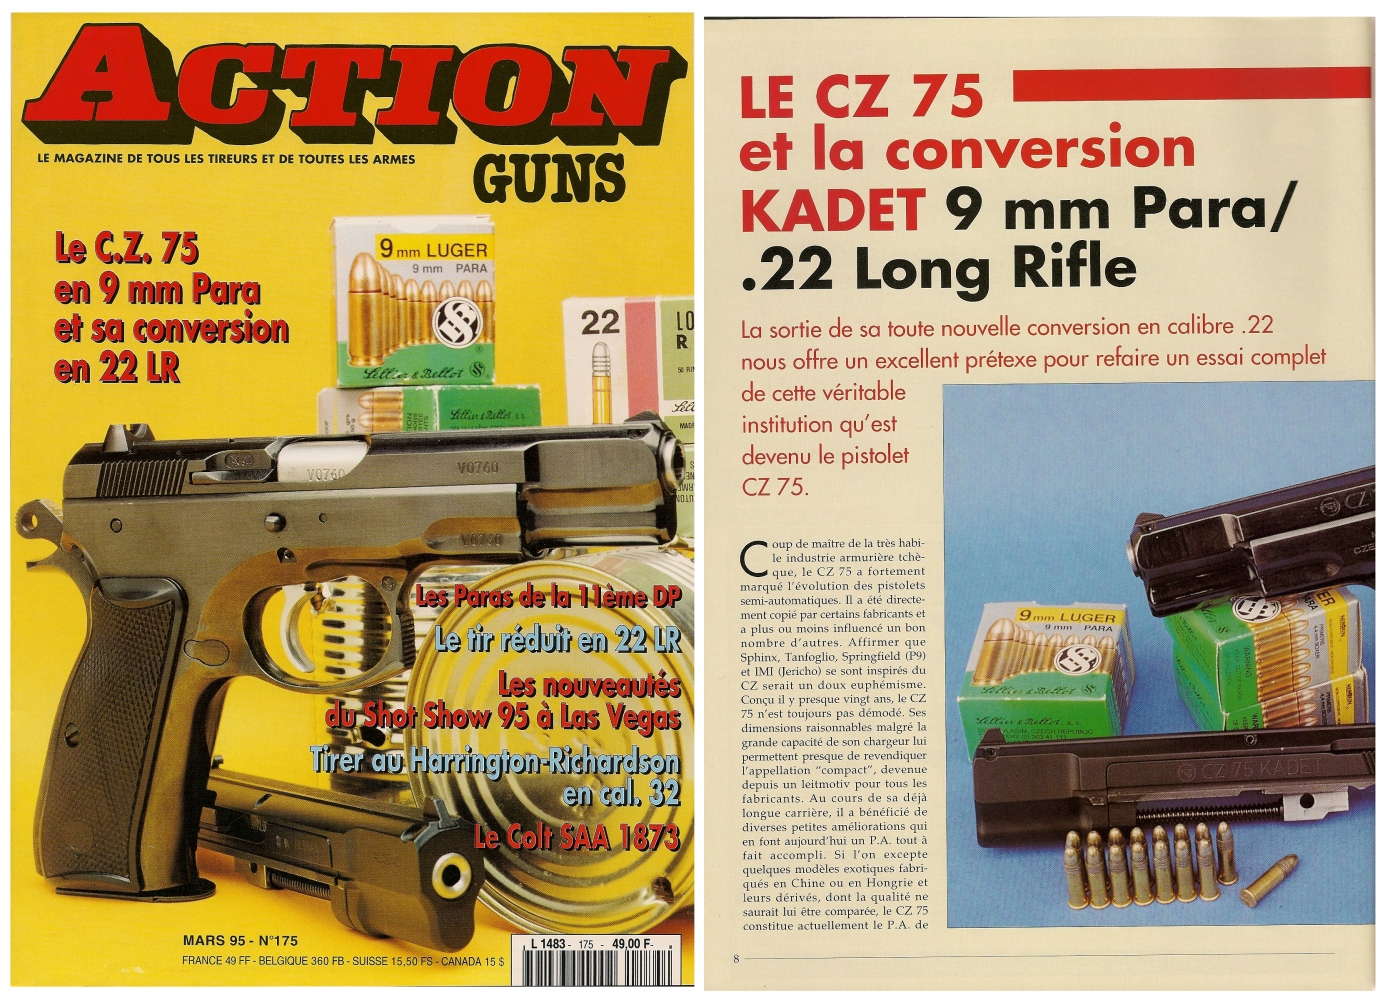 Le banc d'essai du pistolet CZ 75 en calibre 9 Para et de sa conversion Kadet en calibre .22 Long Rifle avait été publié sur 5 pages dans le magazine Action Guns n° 175 (mars 1995).